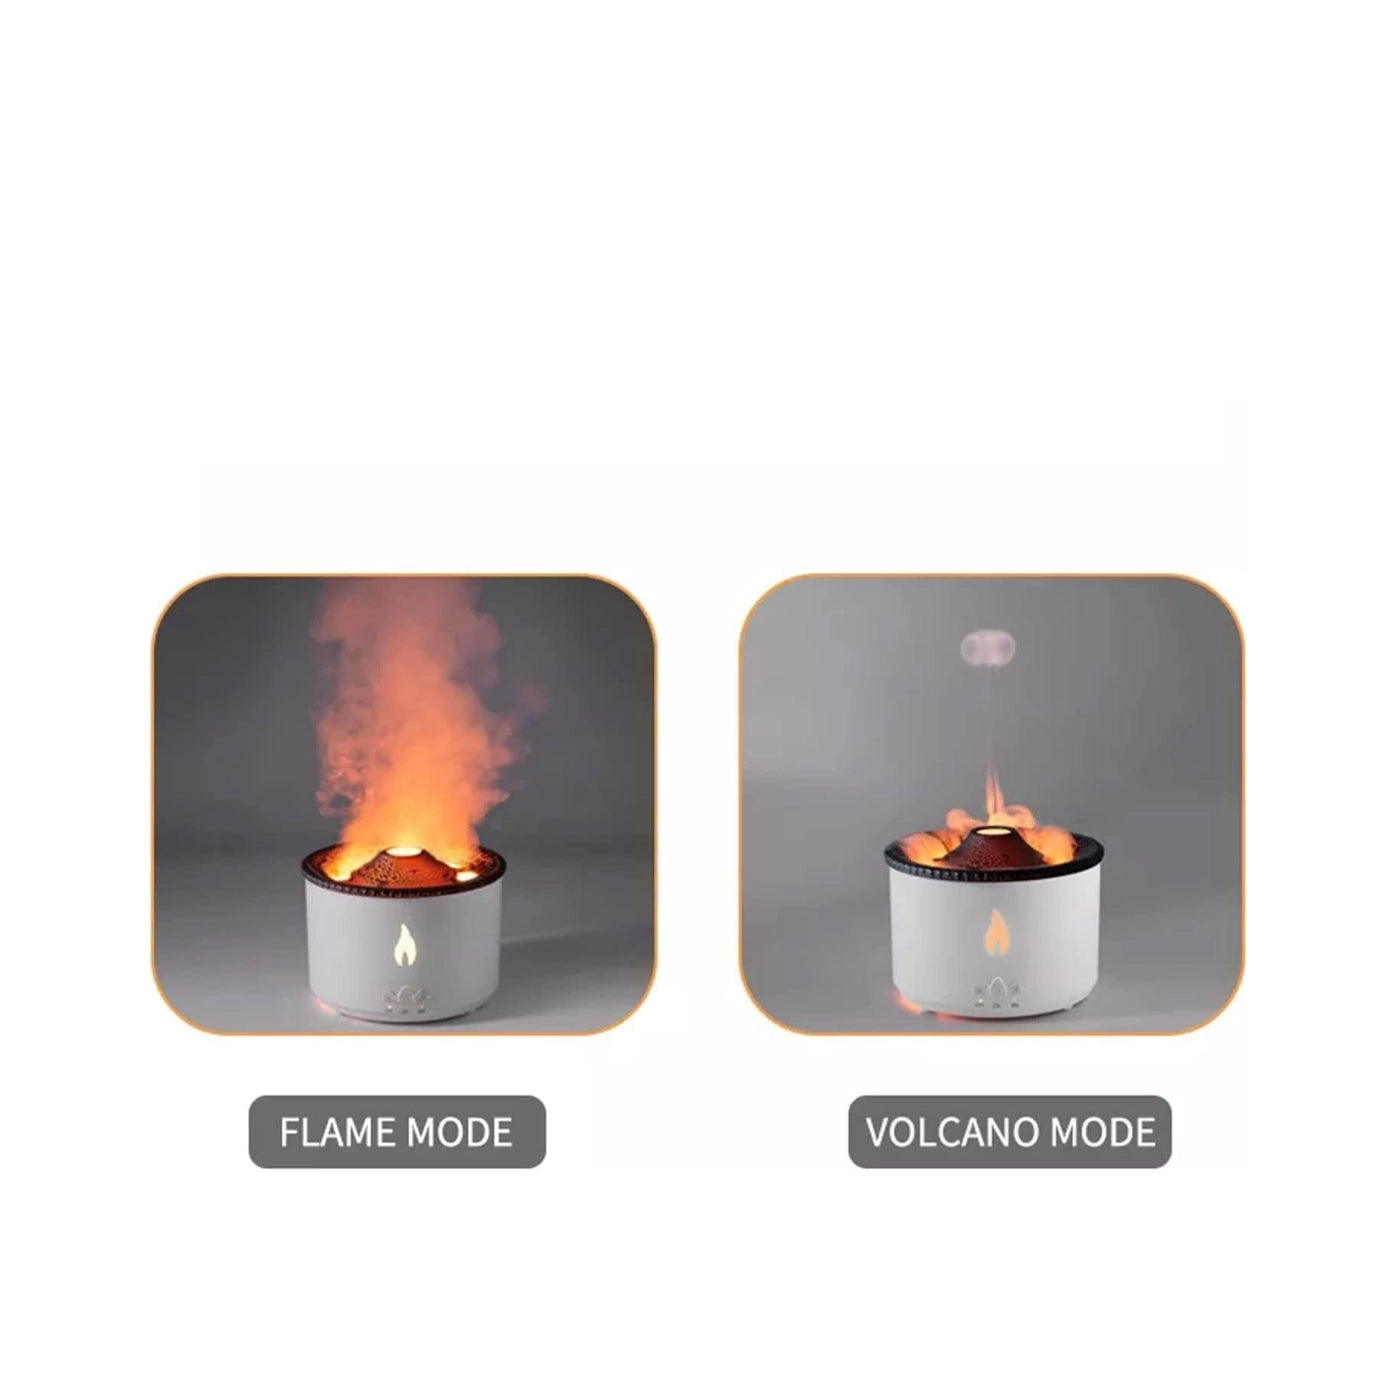 Ultrasonic Volcano Flame Diffuser | Oil Diffuser Auto-Off Protection